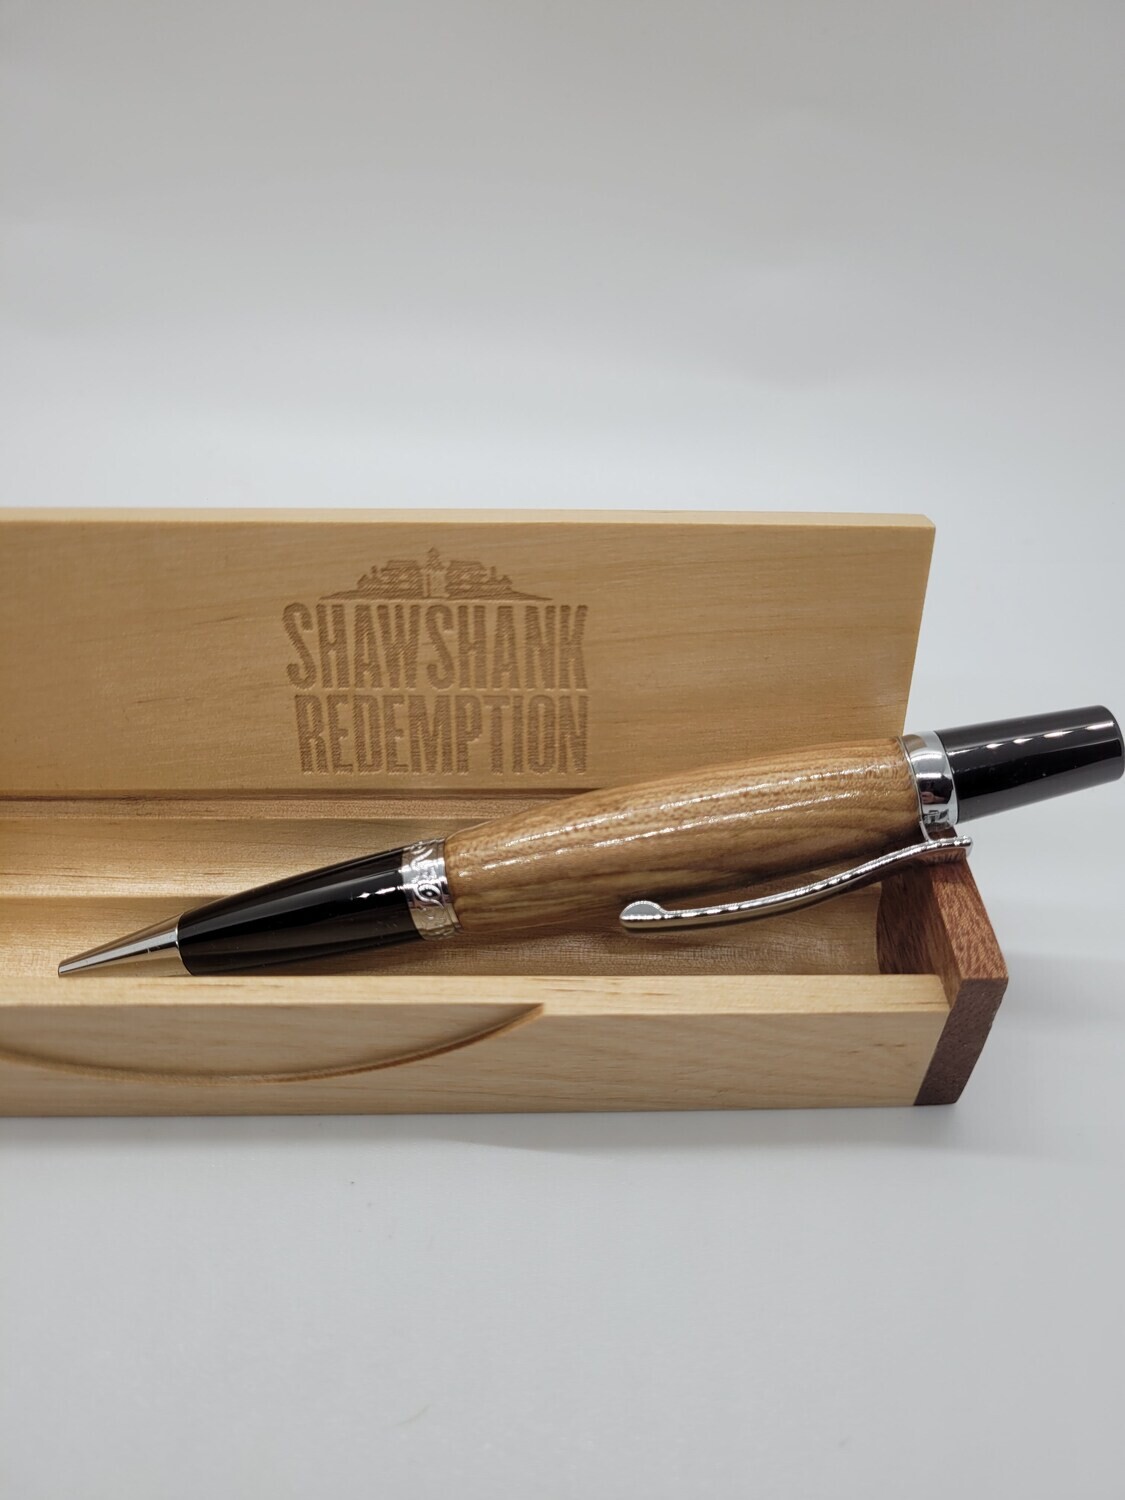 Shawshank pen